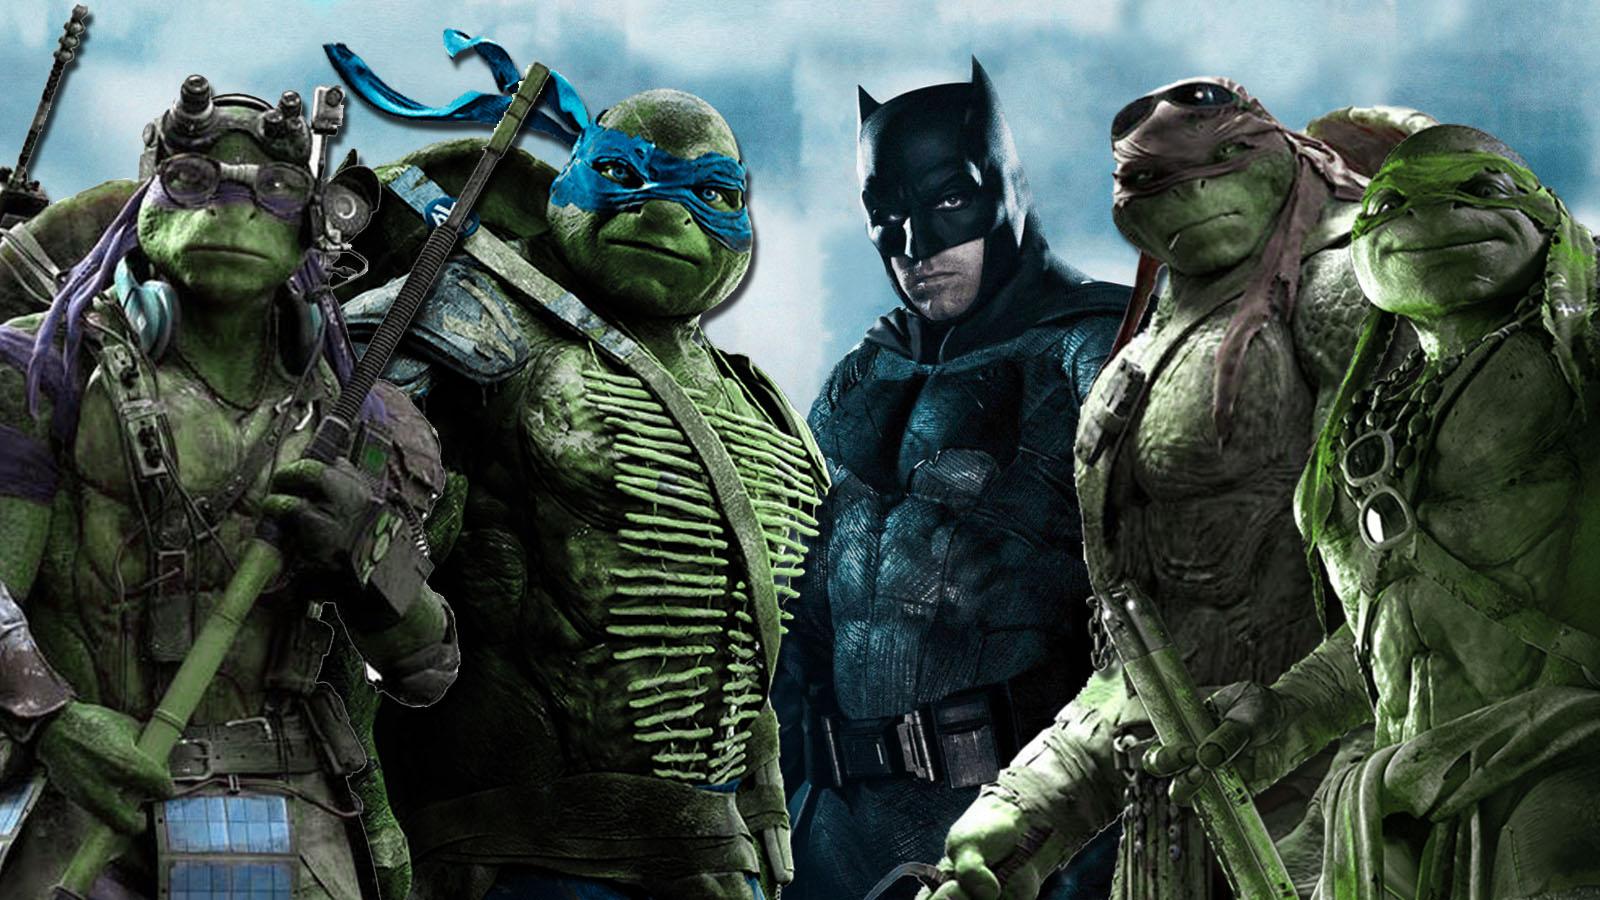 Batman Vs Teenage Mutant Ninja Turtles Live Action